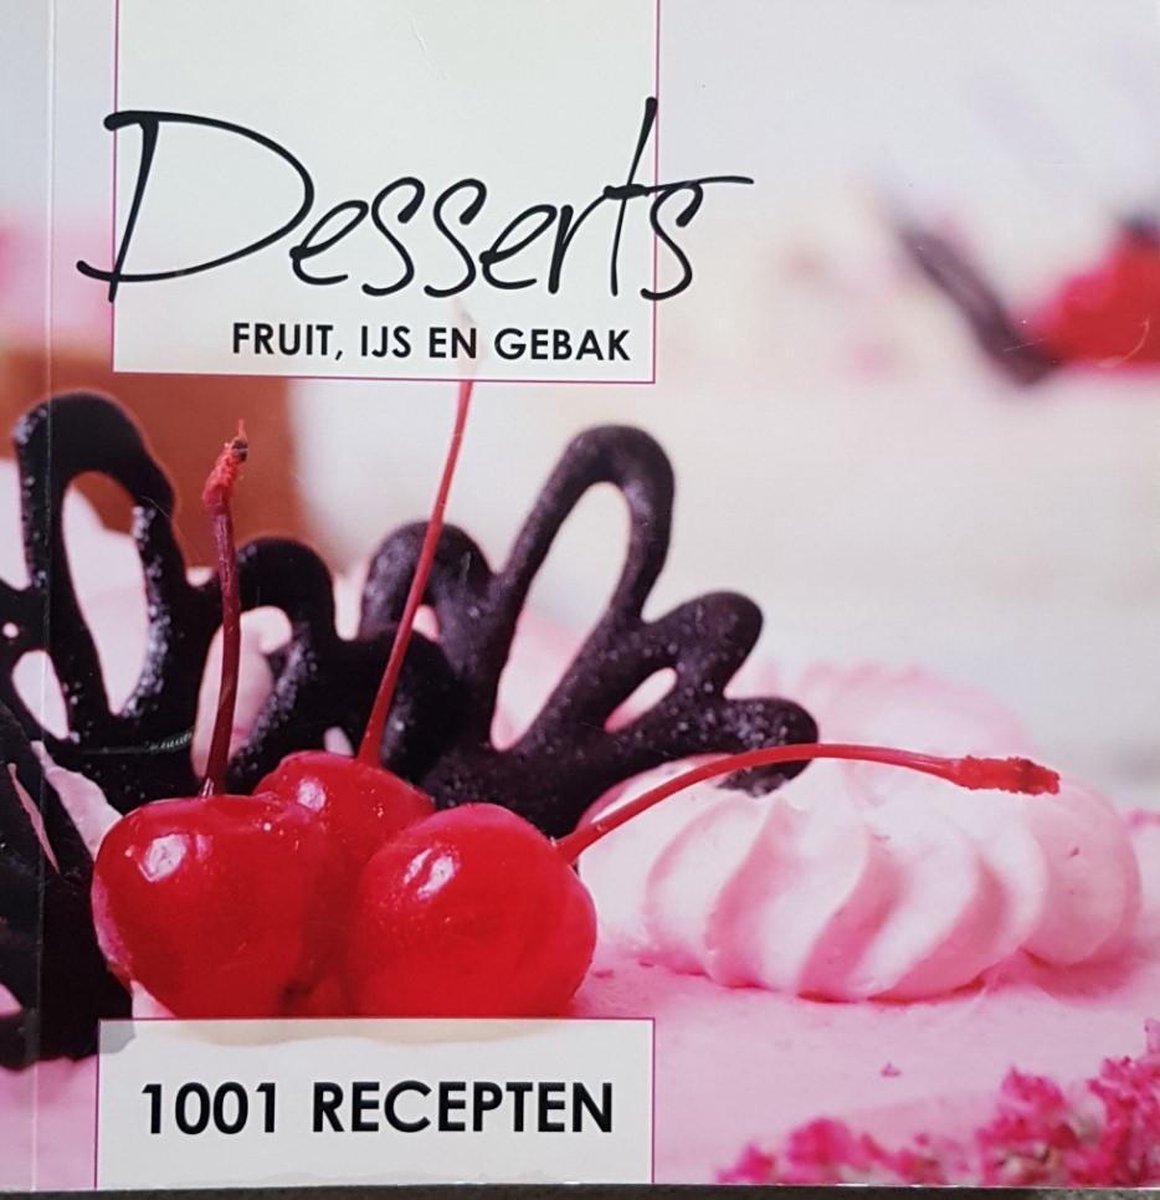 Desserts, fruit, ijs en gebak, 1001 recepten